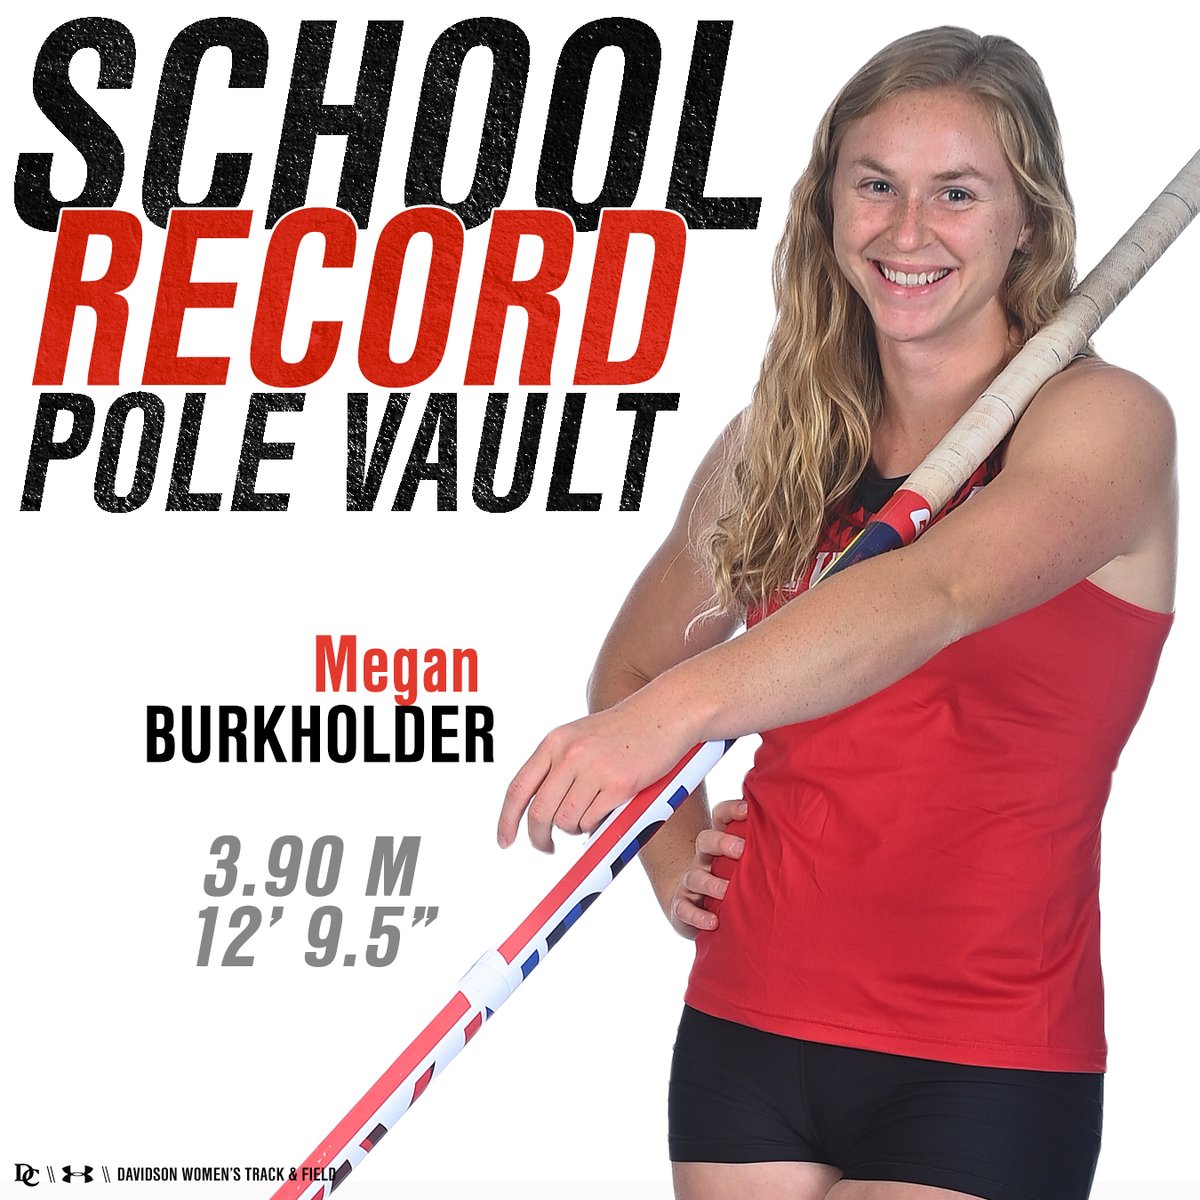 𝗪𝗢𝗠𝗘𝗡'𝗦 𝗧𝗥𝗔𝗖𝗞 & 𝗙𝗜𝗘𝗟𝗗 𝗥𝗘𝗖𝗔𝗣 Burkholder Breaks Own School Record in Pole Vault STORY: bit.ly/3w0T5zE